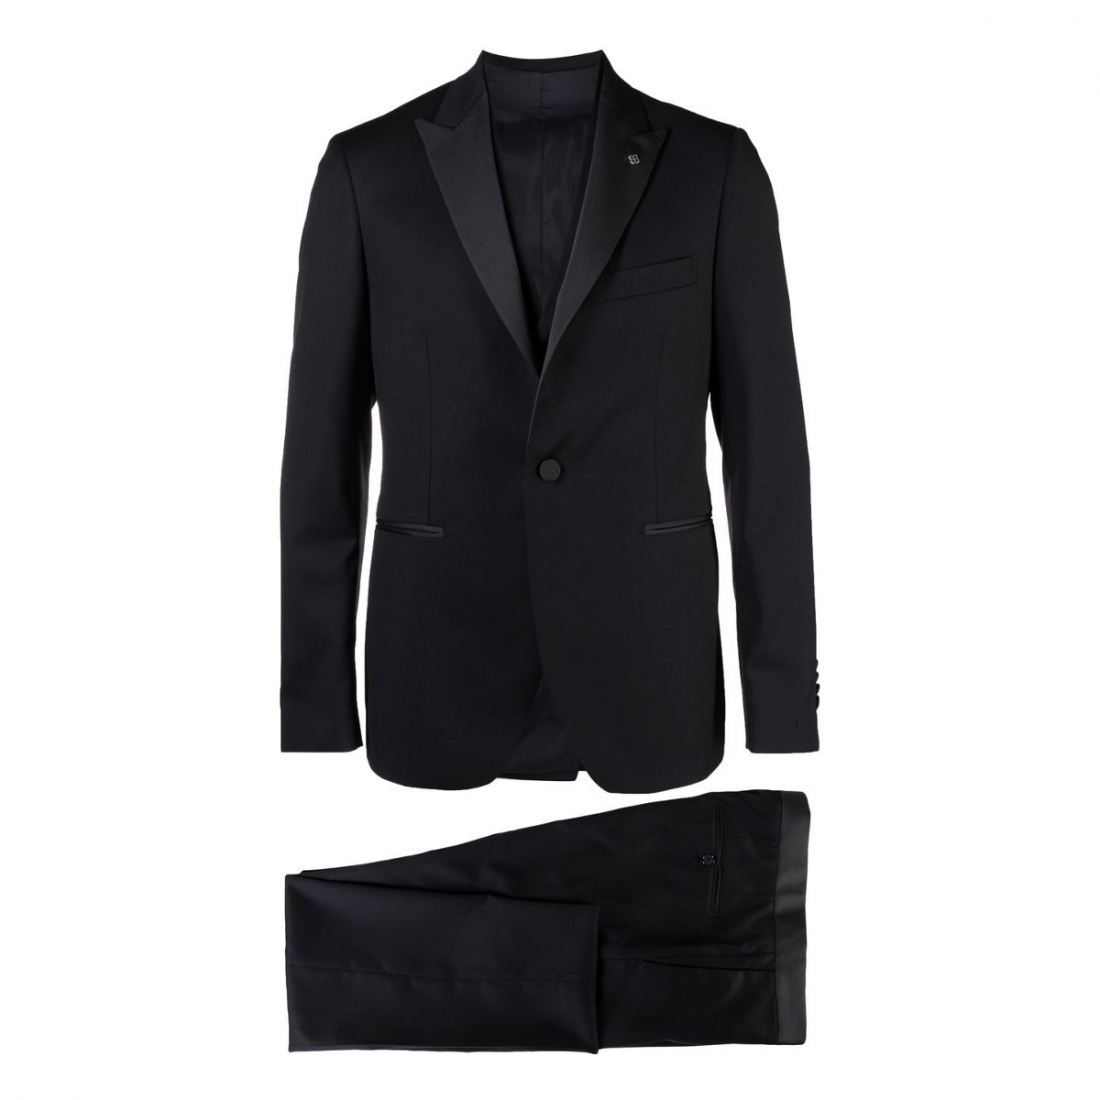 'Tuxedo' Anzug für Herren - 3 Stücke